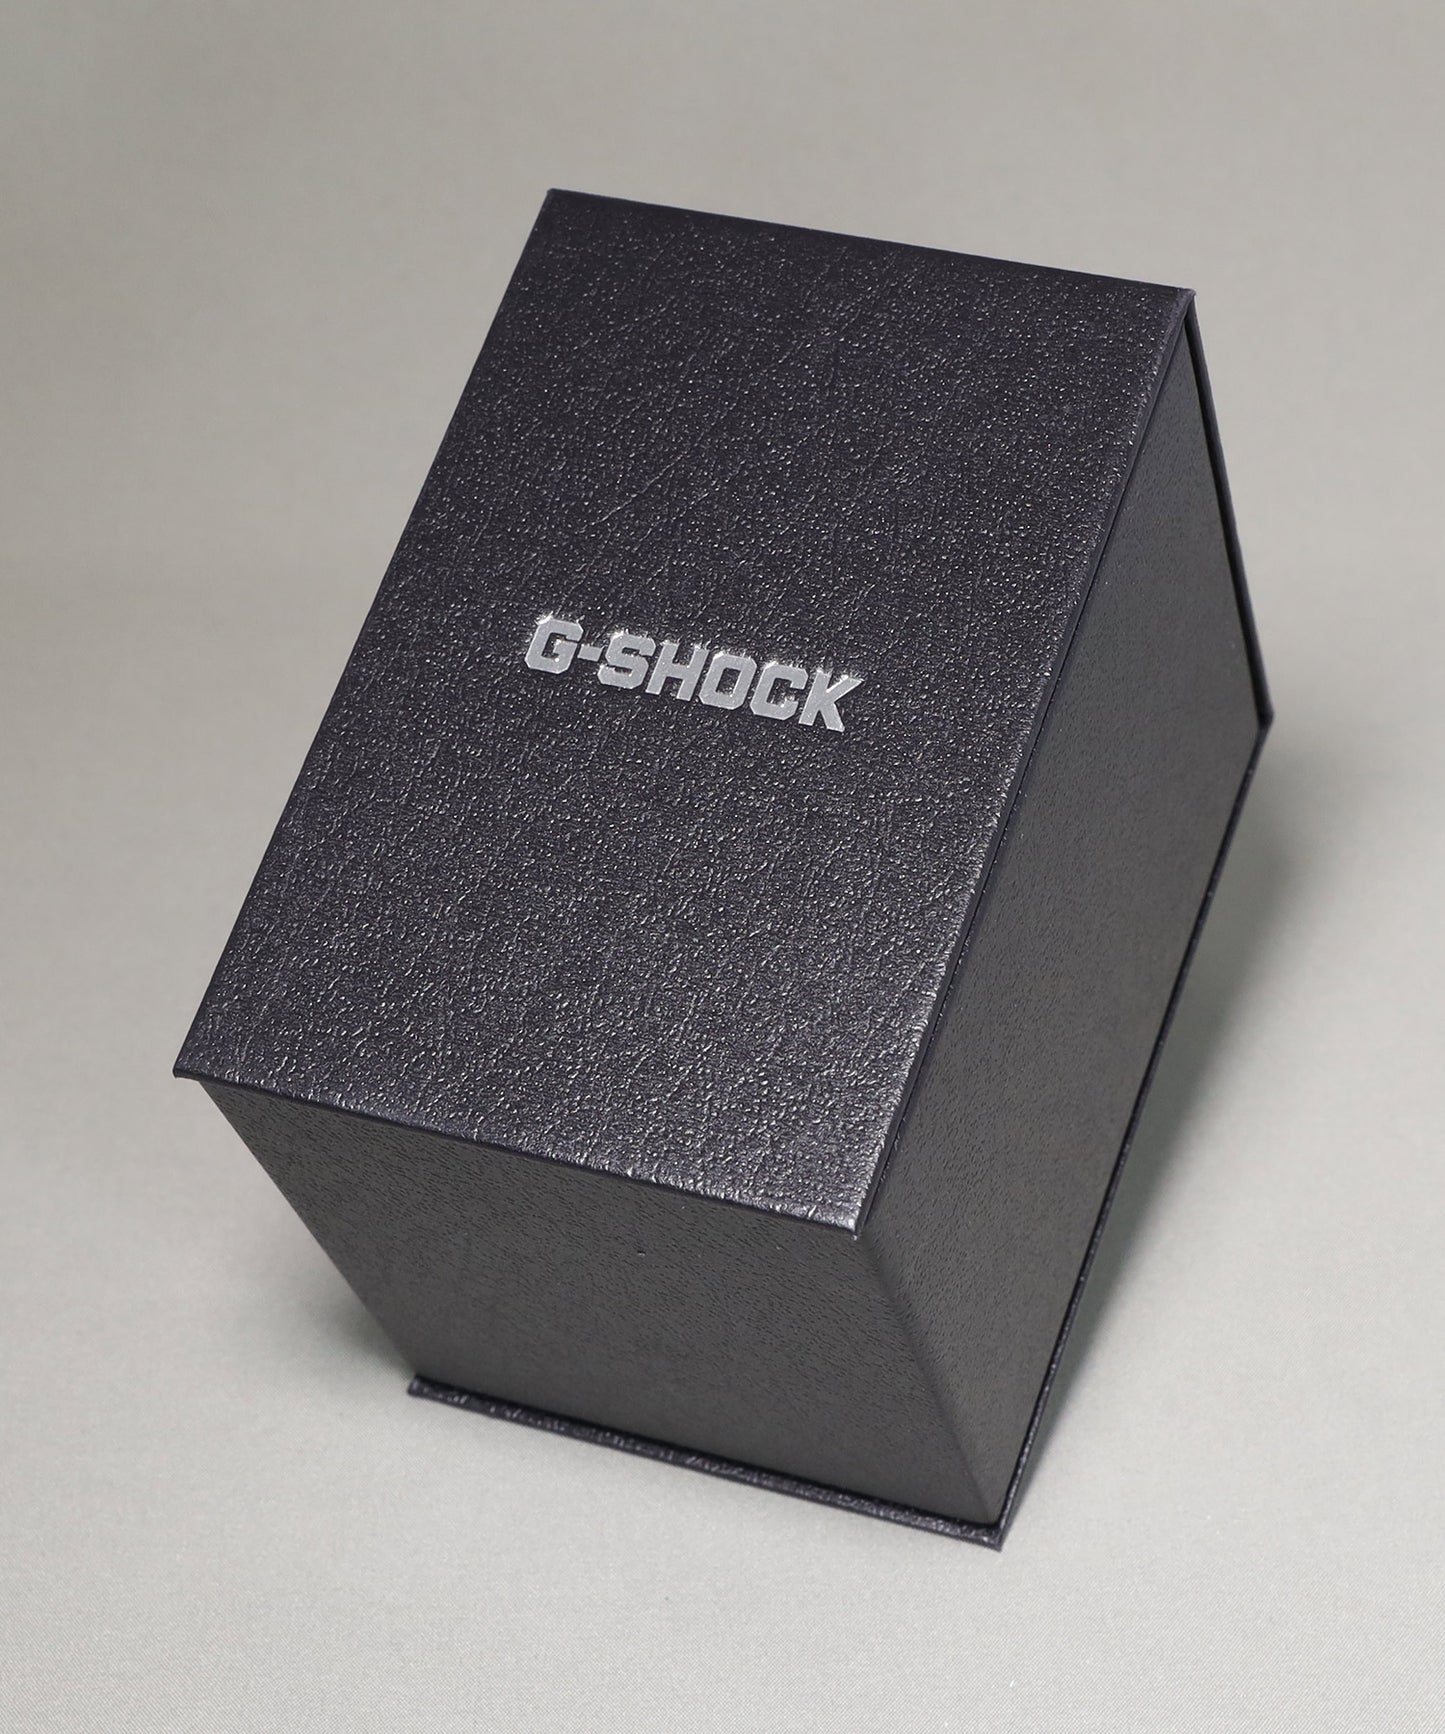 【CASIO】G-SHOCK 5600シリーズ / メタルベゼル / GM-5600U-1JF